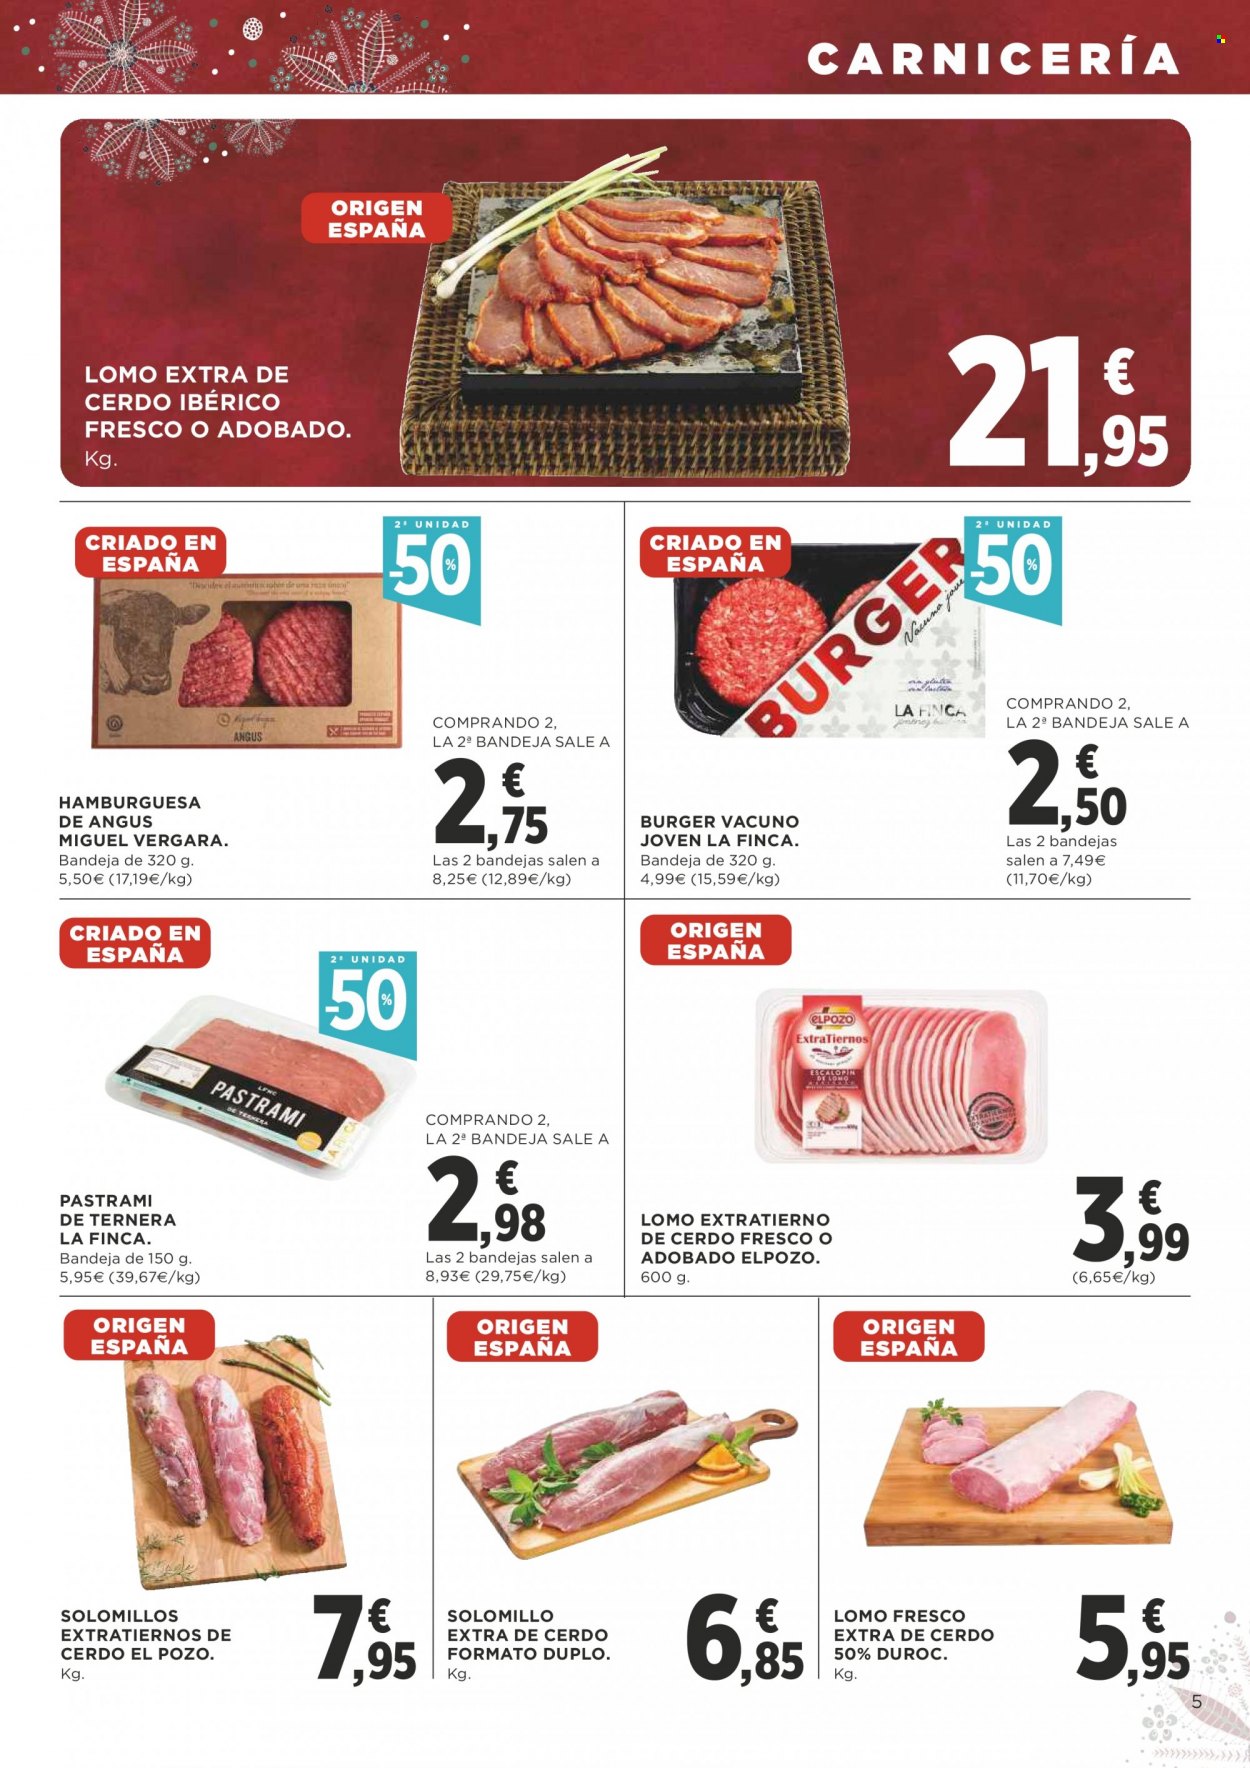 thumbnail - Folleto actual Supercor supermercados - 02/12/21 - 15/12/21 - Ventas - lomo, solomillo, cerdo ibérico, angus, carne de ternera, hamburguesa, El Pozo, pastrami. Página 5.